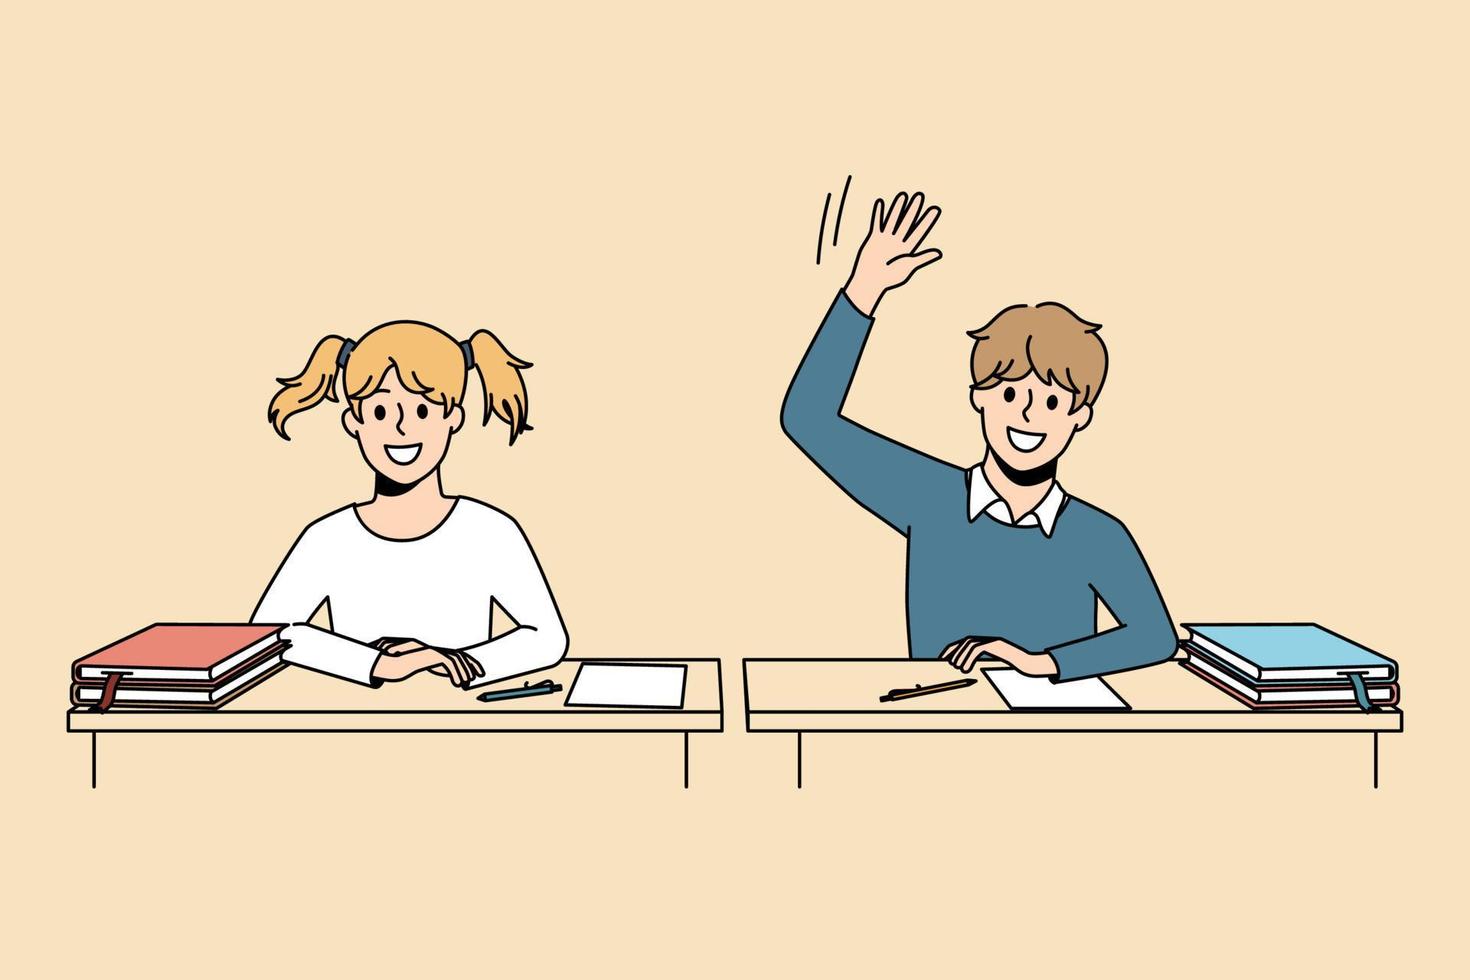 processo educacional e conceito de aprendizagem. alunos sorridentes menino e menina sentados na aula e levantando a mão pronta para responder tendo ilustração vetorial de conhecimento vetor